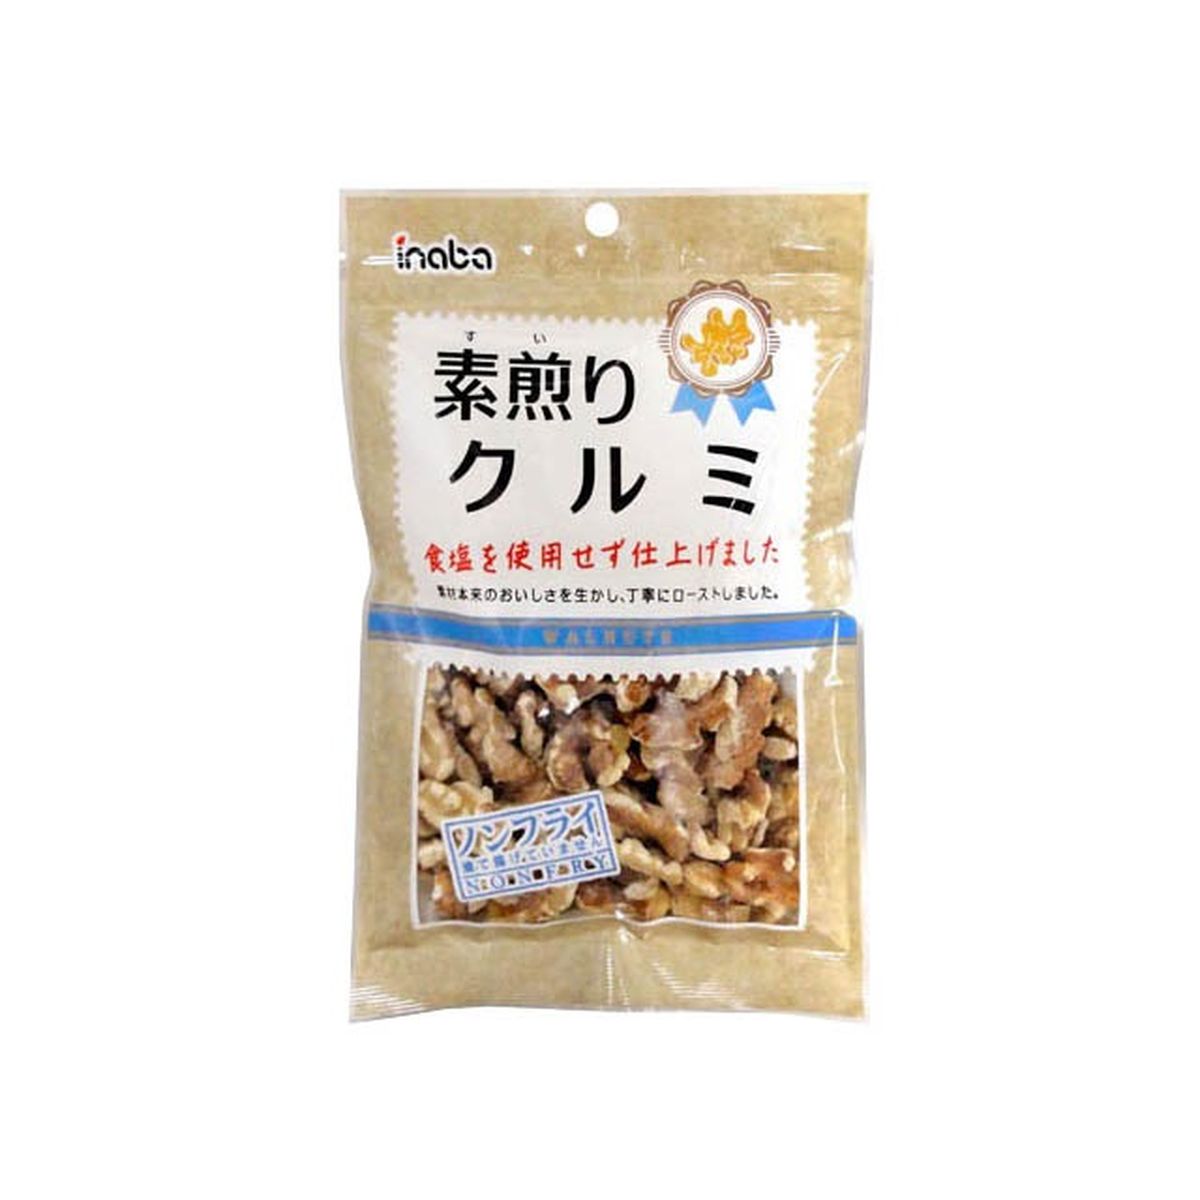 【10個入り】稲葉ピーナツ 素煎りクルミ 90g